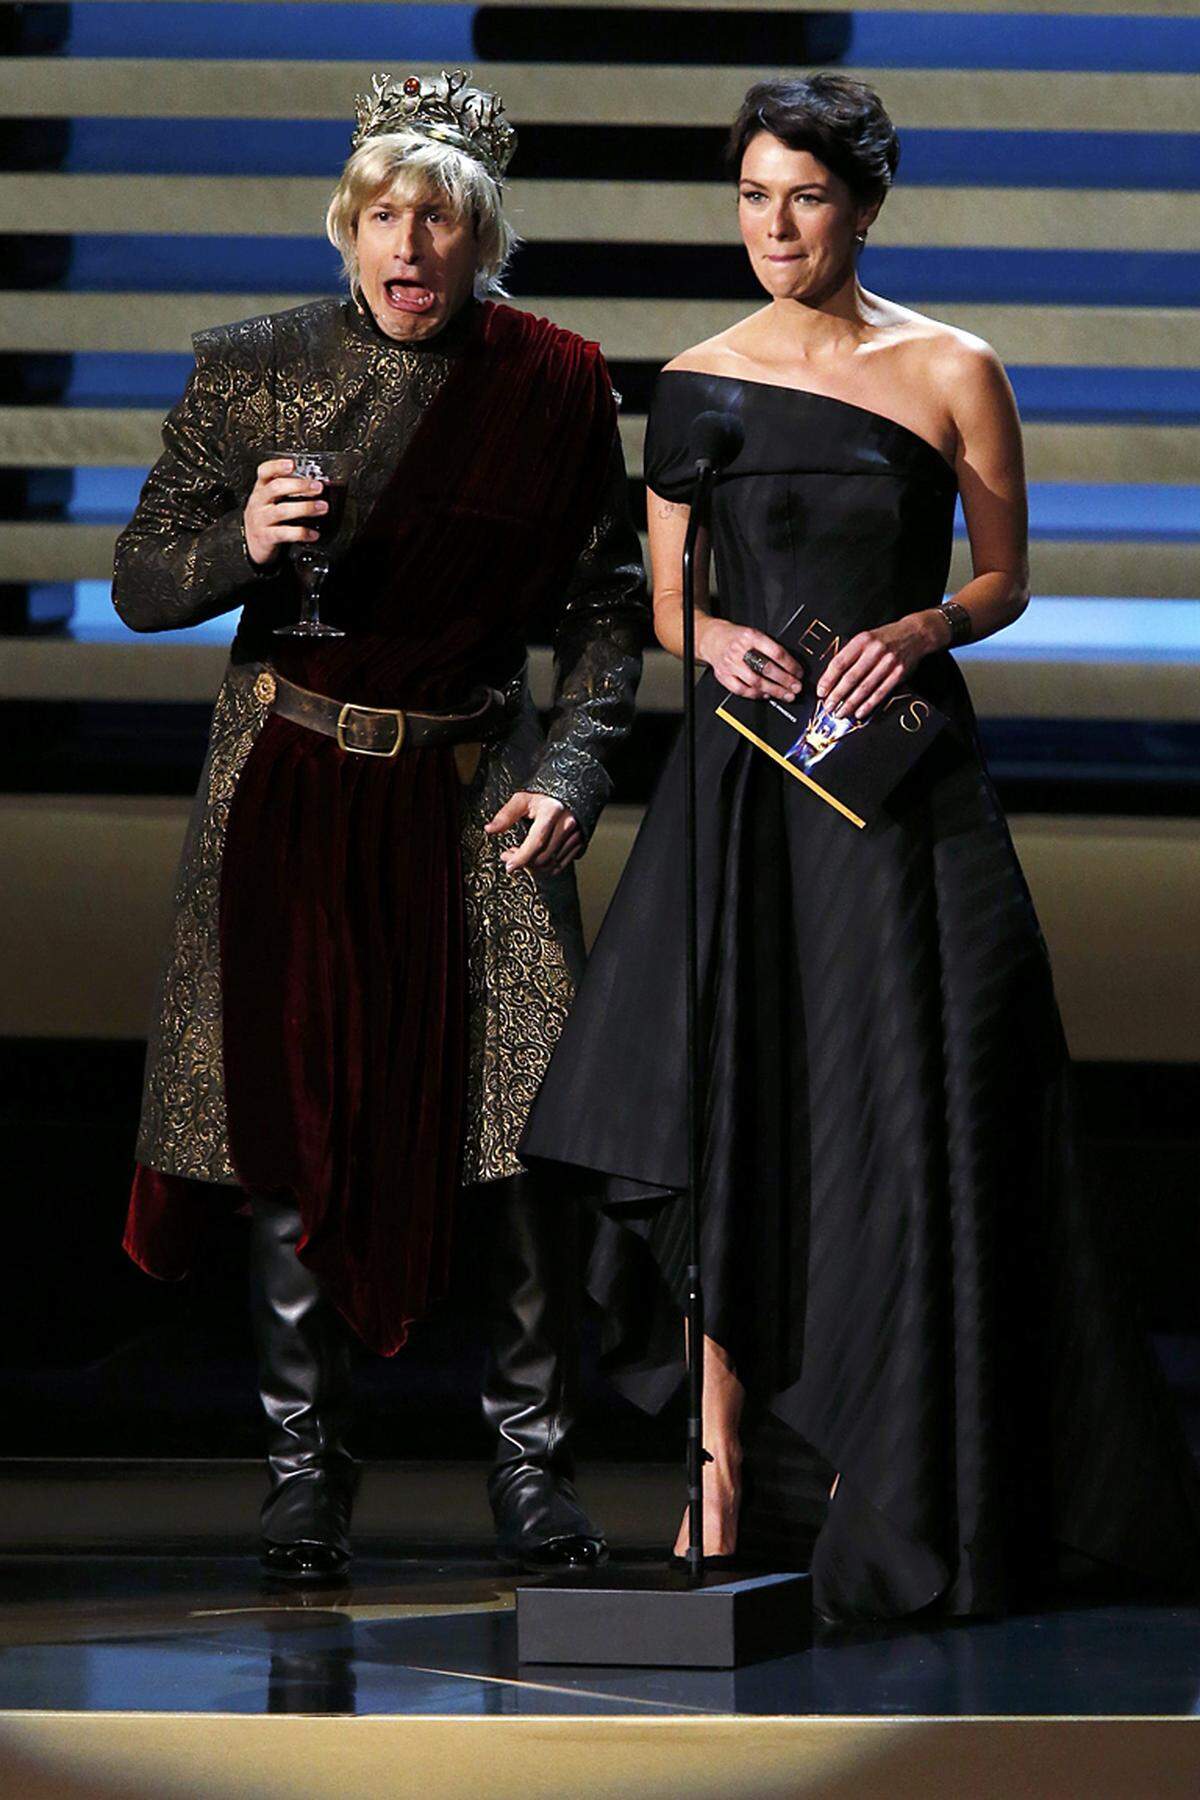 "Game of Thrones" erfuhr aber eine andere Würdigung: Comedian Andy Samberg verkleidete sich als König Joffrey, der Seriensohn von "Game of Thrones"-Star Lena Headey. Die Darstellerin war leicht irritiert, trug die Störung aber mit Fassung.